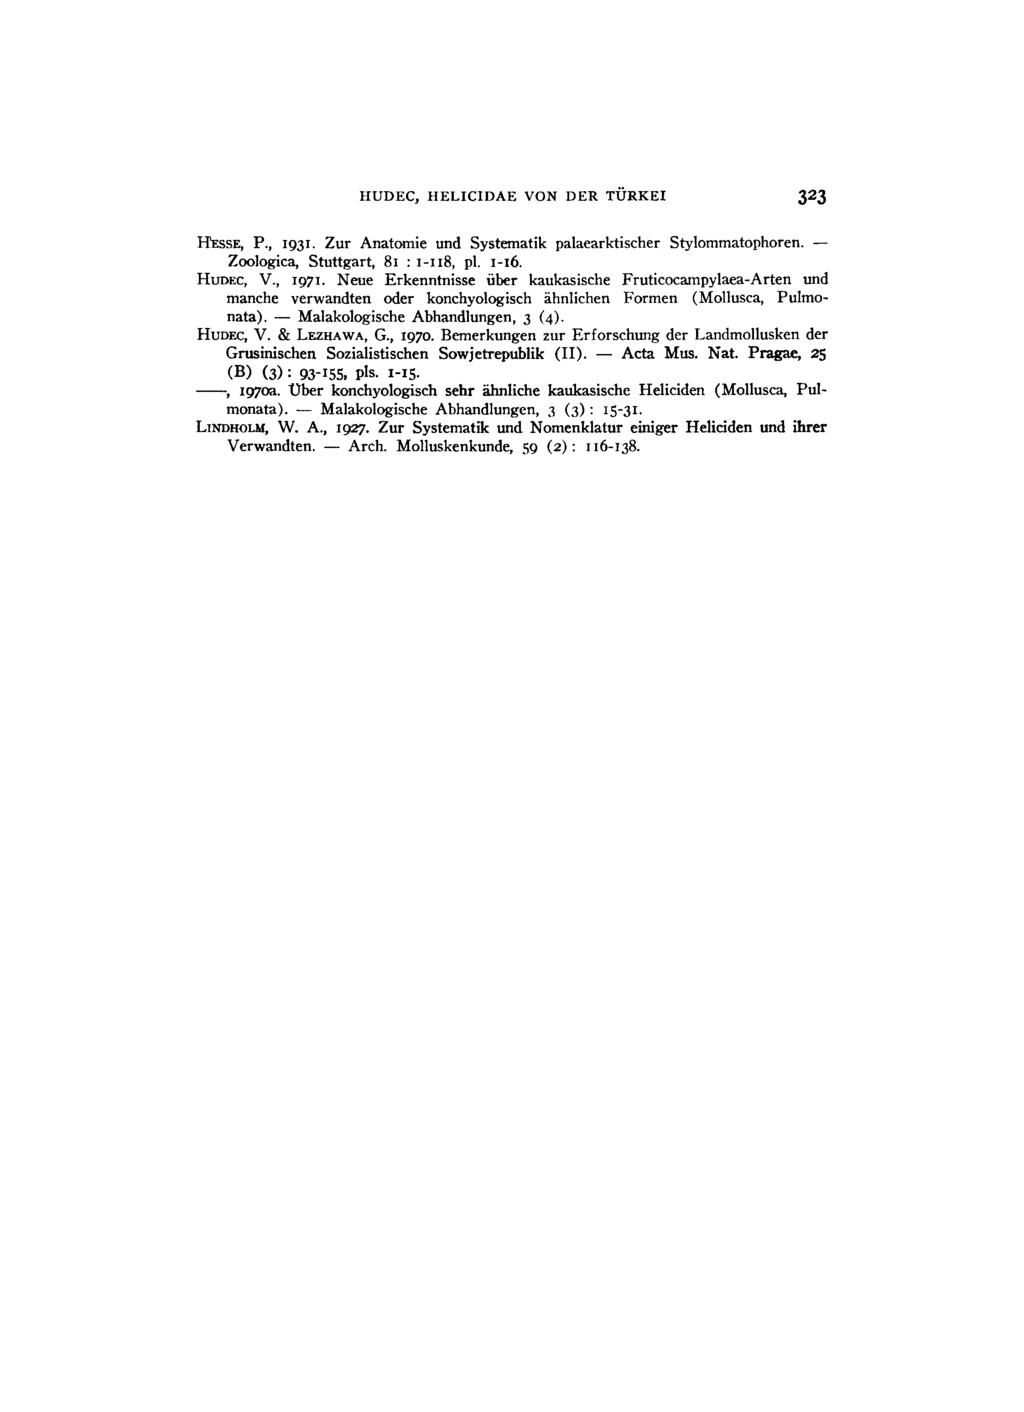 HUDEC, HELICIDAE VON DER TÜRKEI 323 HESSE, P., 1931. Zur Anatomie und Systematik palaearktischer Stylommatophoren. Zoologica, Stuttgart, 81 : 1-118, pl. 1-16. HUDEC, V., 1971.